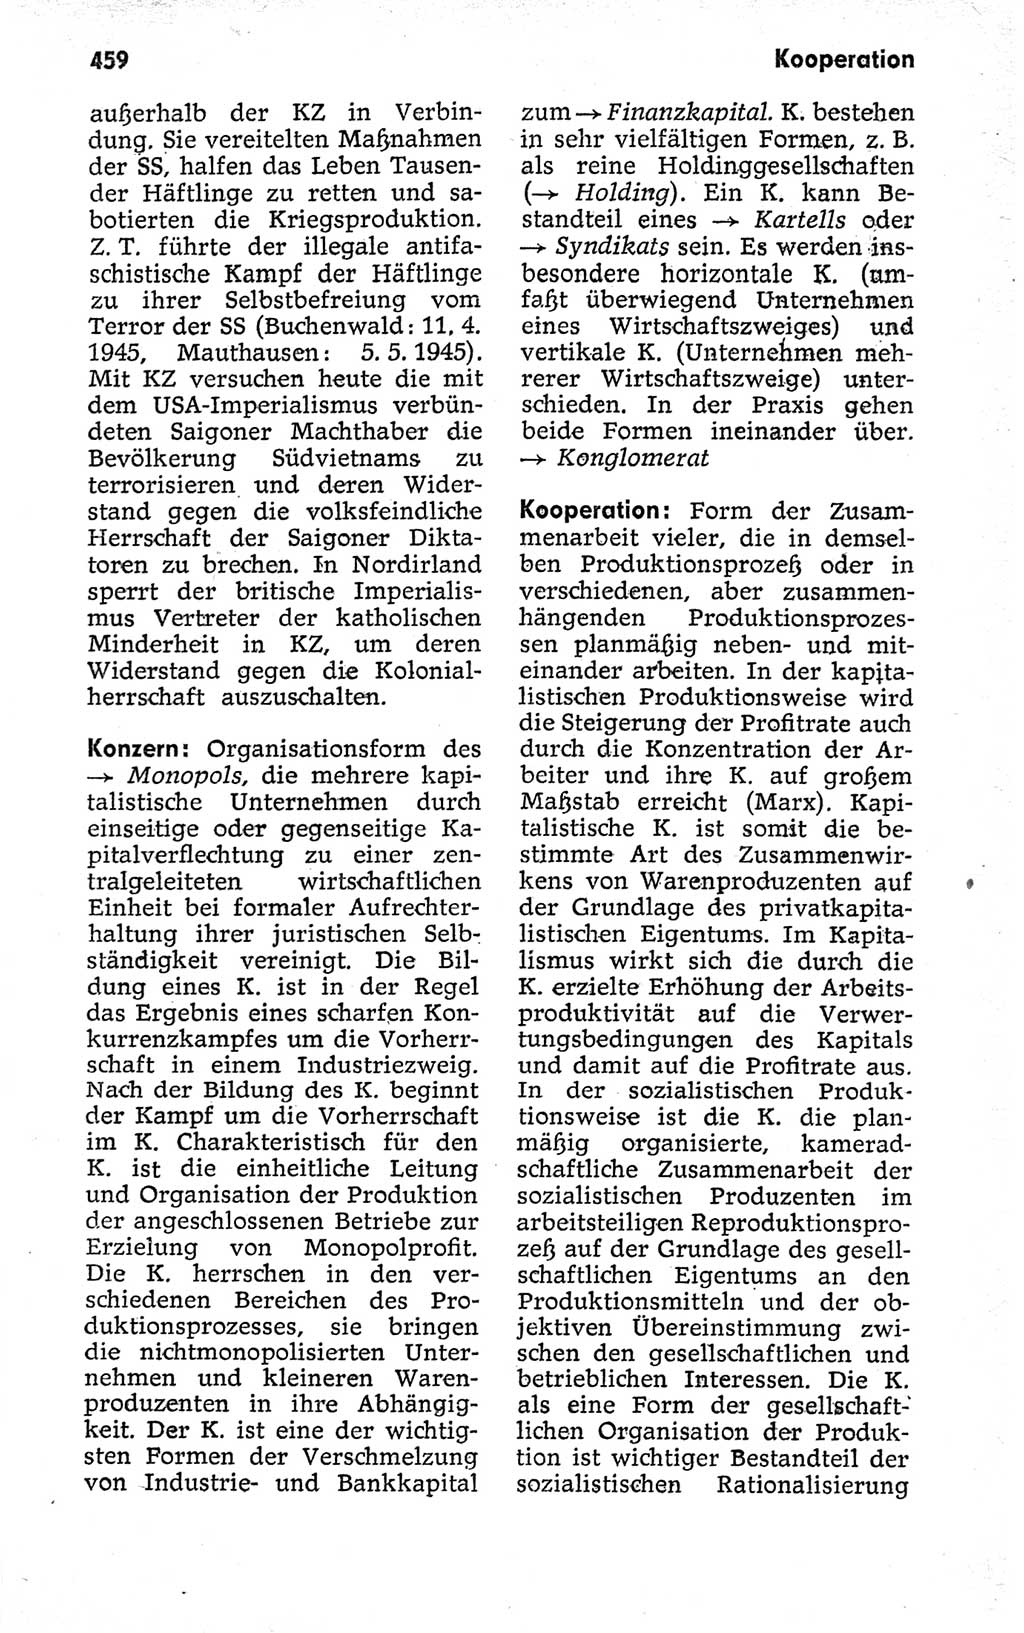 Kleines politisches Wörterbuch [Deutsche Demokratische Republik (DDR)] 1973, Seite 459 (Kl. pol. Wb. DDR 1973, S. 459)